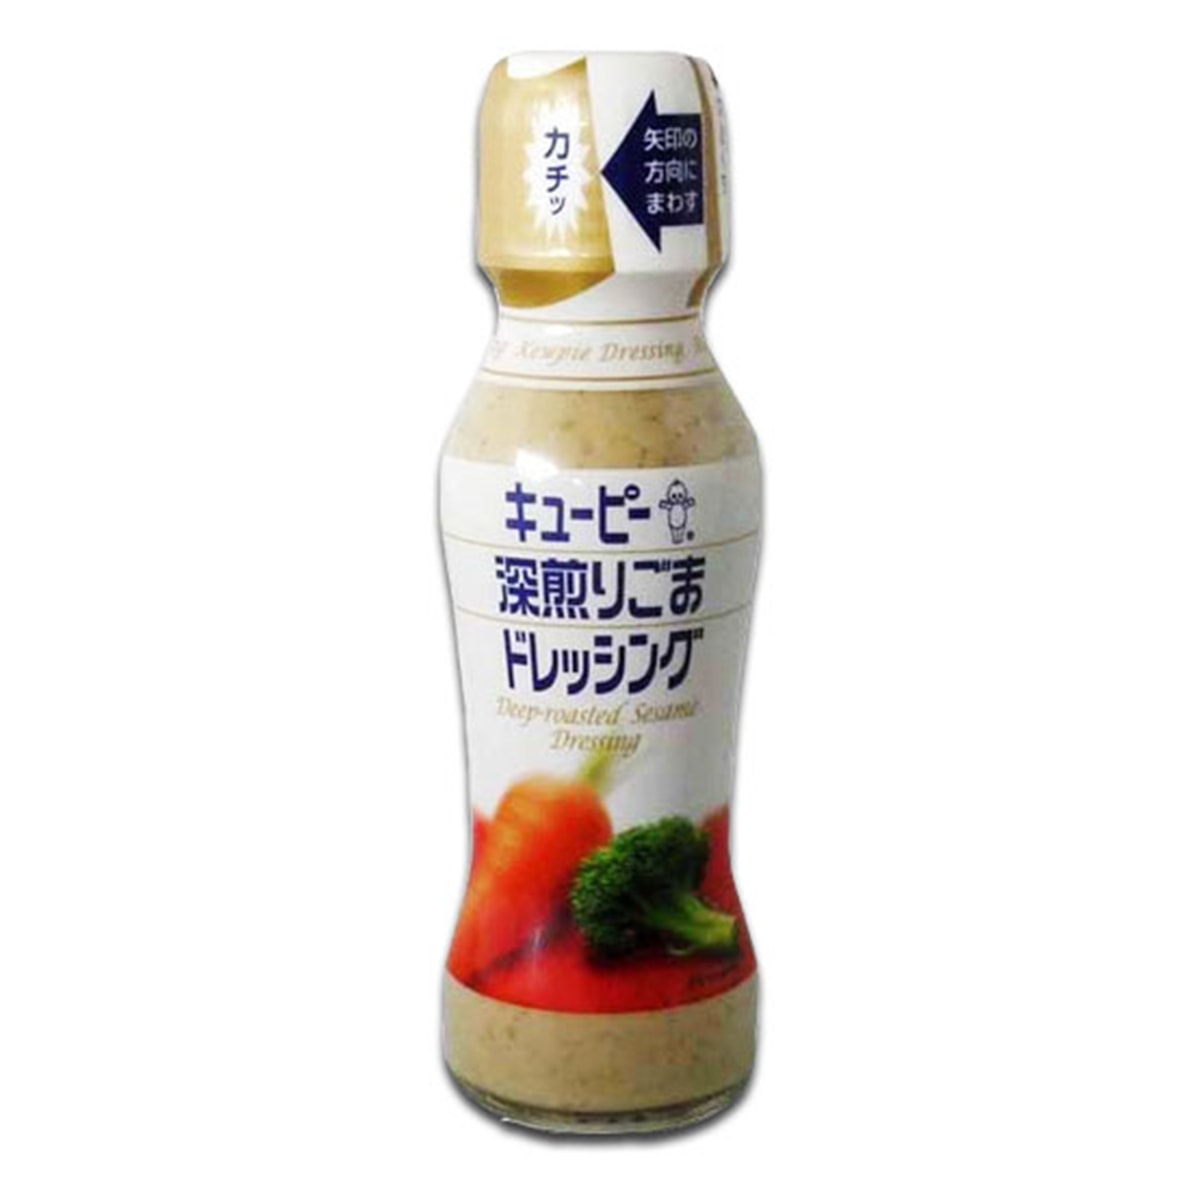 Buy Kewpie Japanese Dressing (Deep Roasted Sesame Dressing) - 150 ml